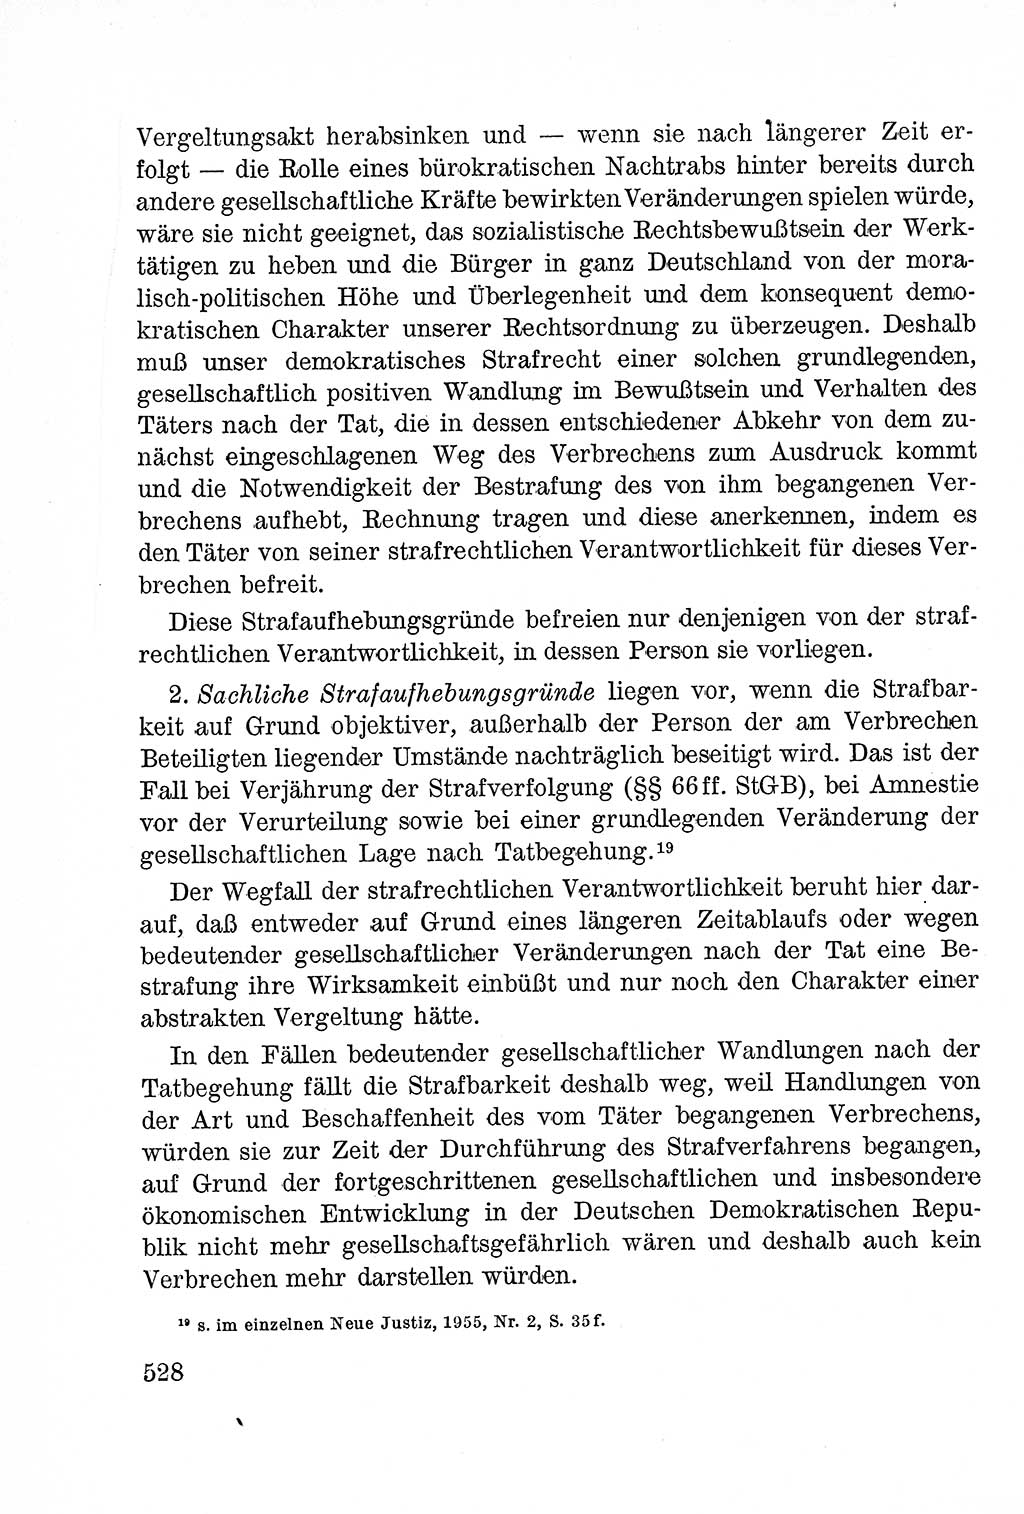 Lehrbuch des Strafrechts der Deutschen Demokratischen Republik (DDR), Allgemeiner Teil 1957, Seite 528 (Lb. Strafr. DDR AT 1957, S. 528)